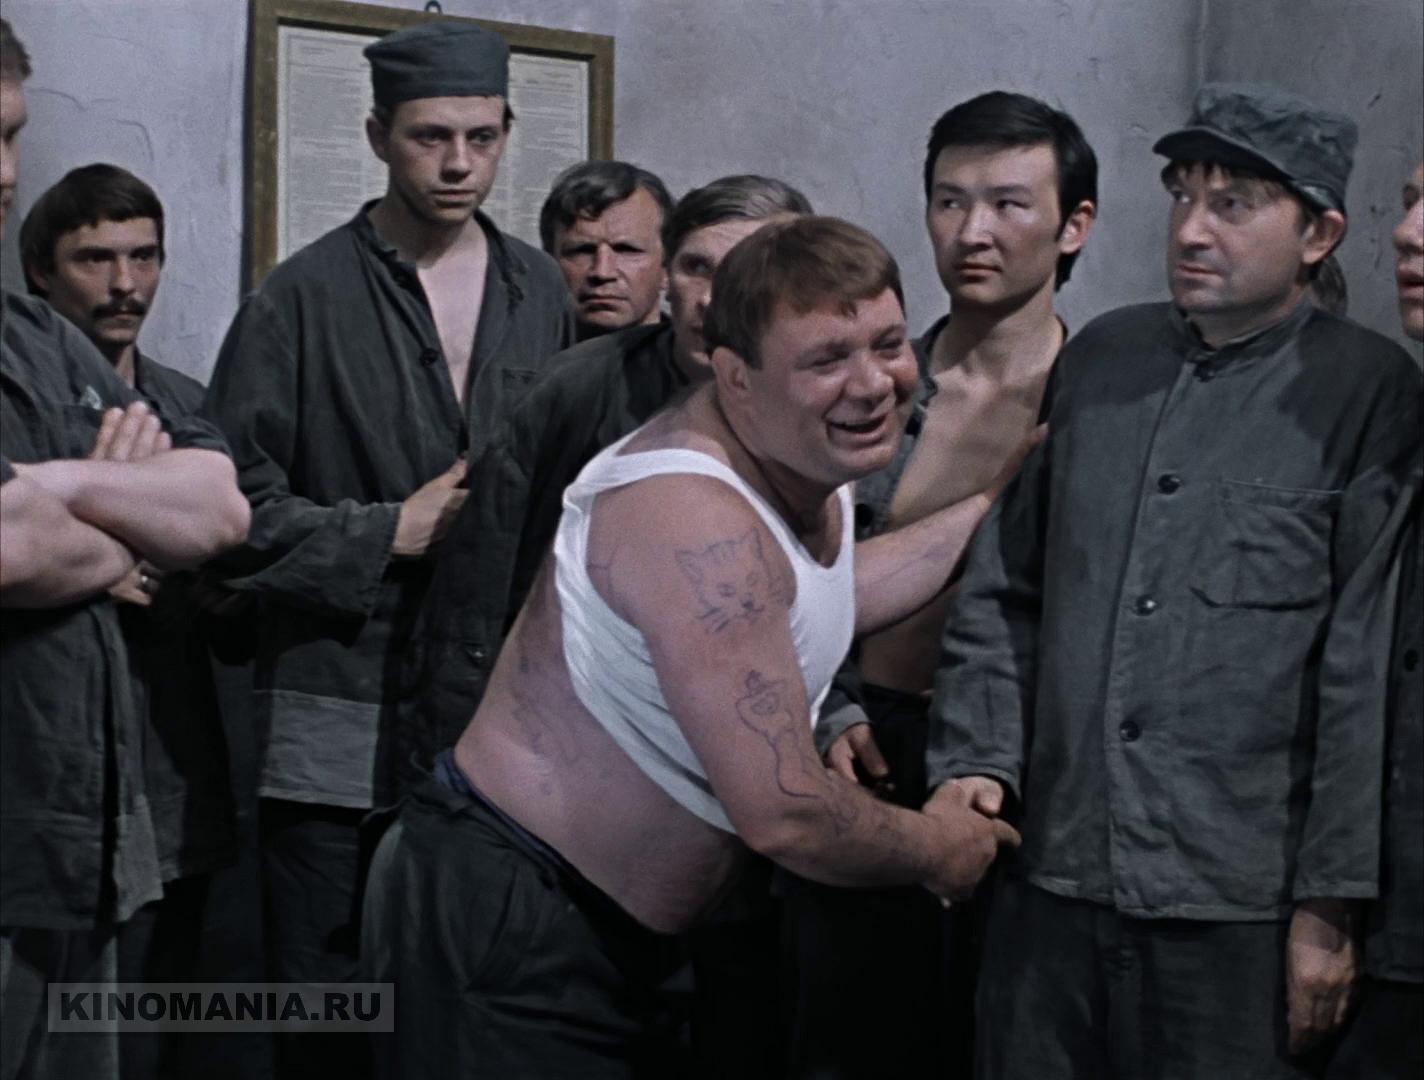 Фото из фильма джентльмены удачи в тюрьме